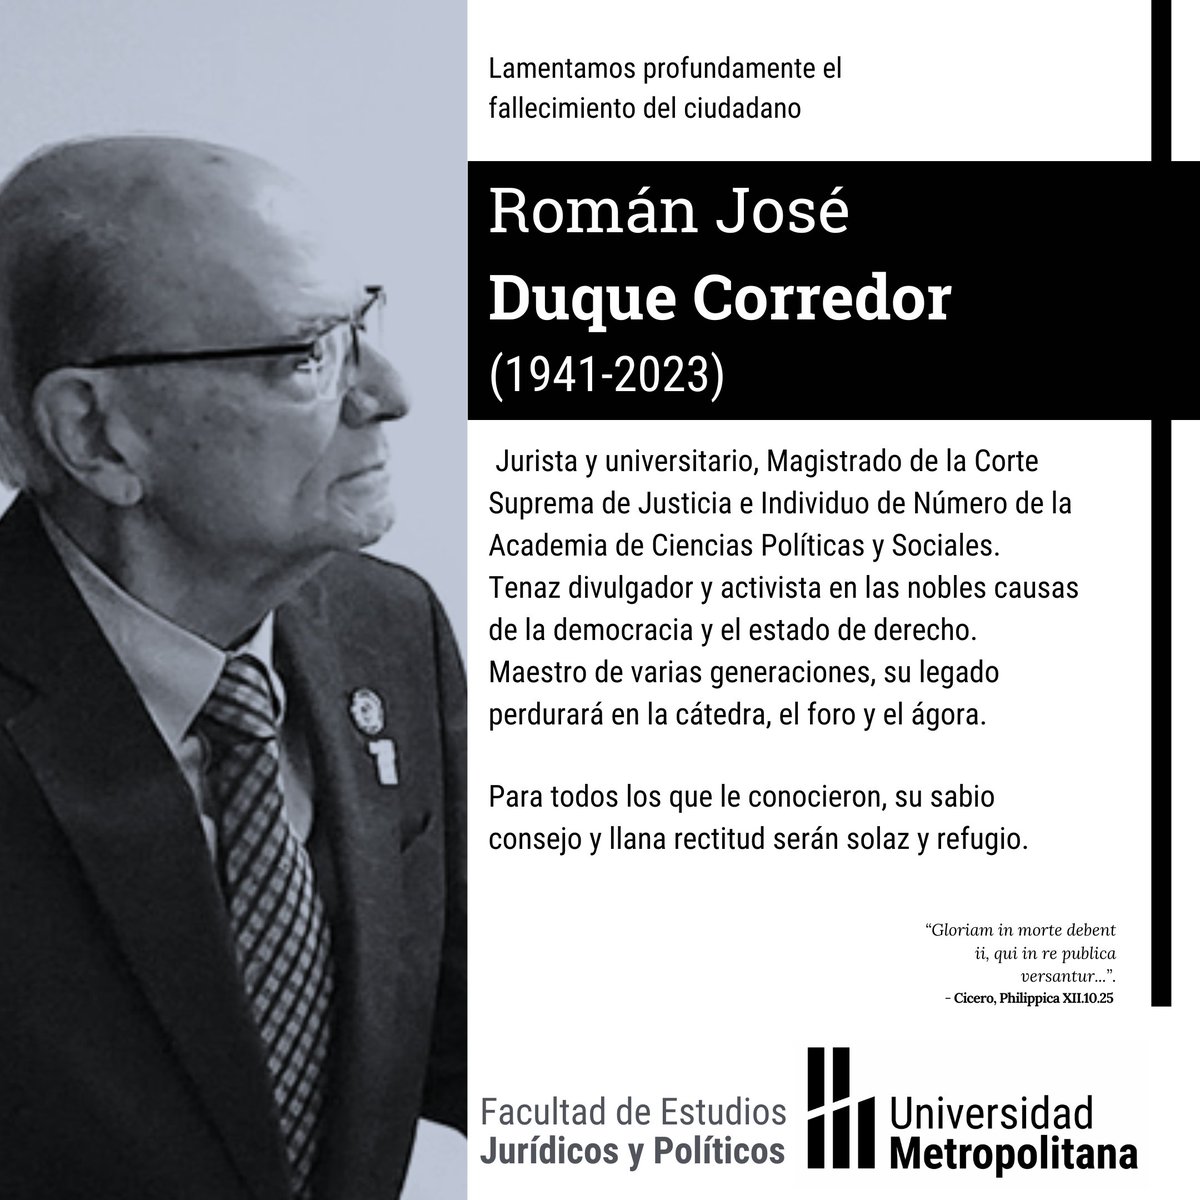 Con profundo pesar lamentamos la muerte del gran jurista venezolano, Román Duque Corredor (1941-2023). Su compromiso con la democracia y la justicia social fue inspirador. Su humildad más allá de sus logros, admirable. Descanse en paz, Dr. Duque Corredor.